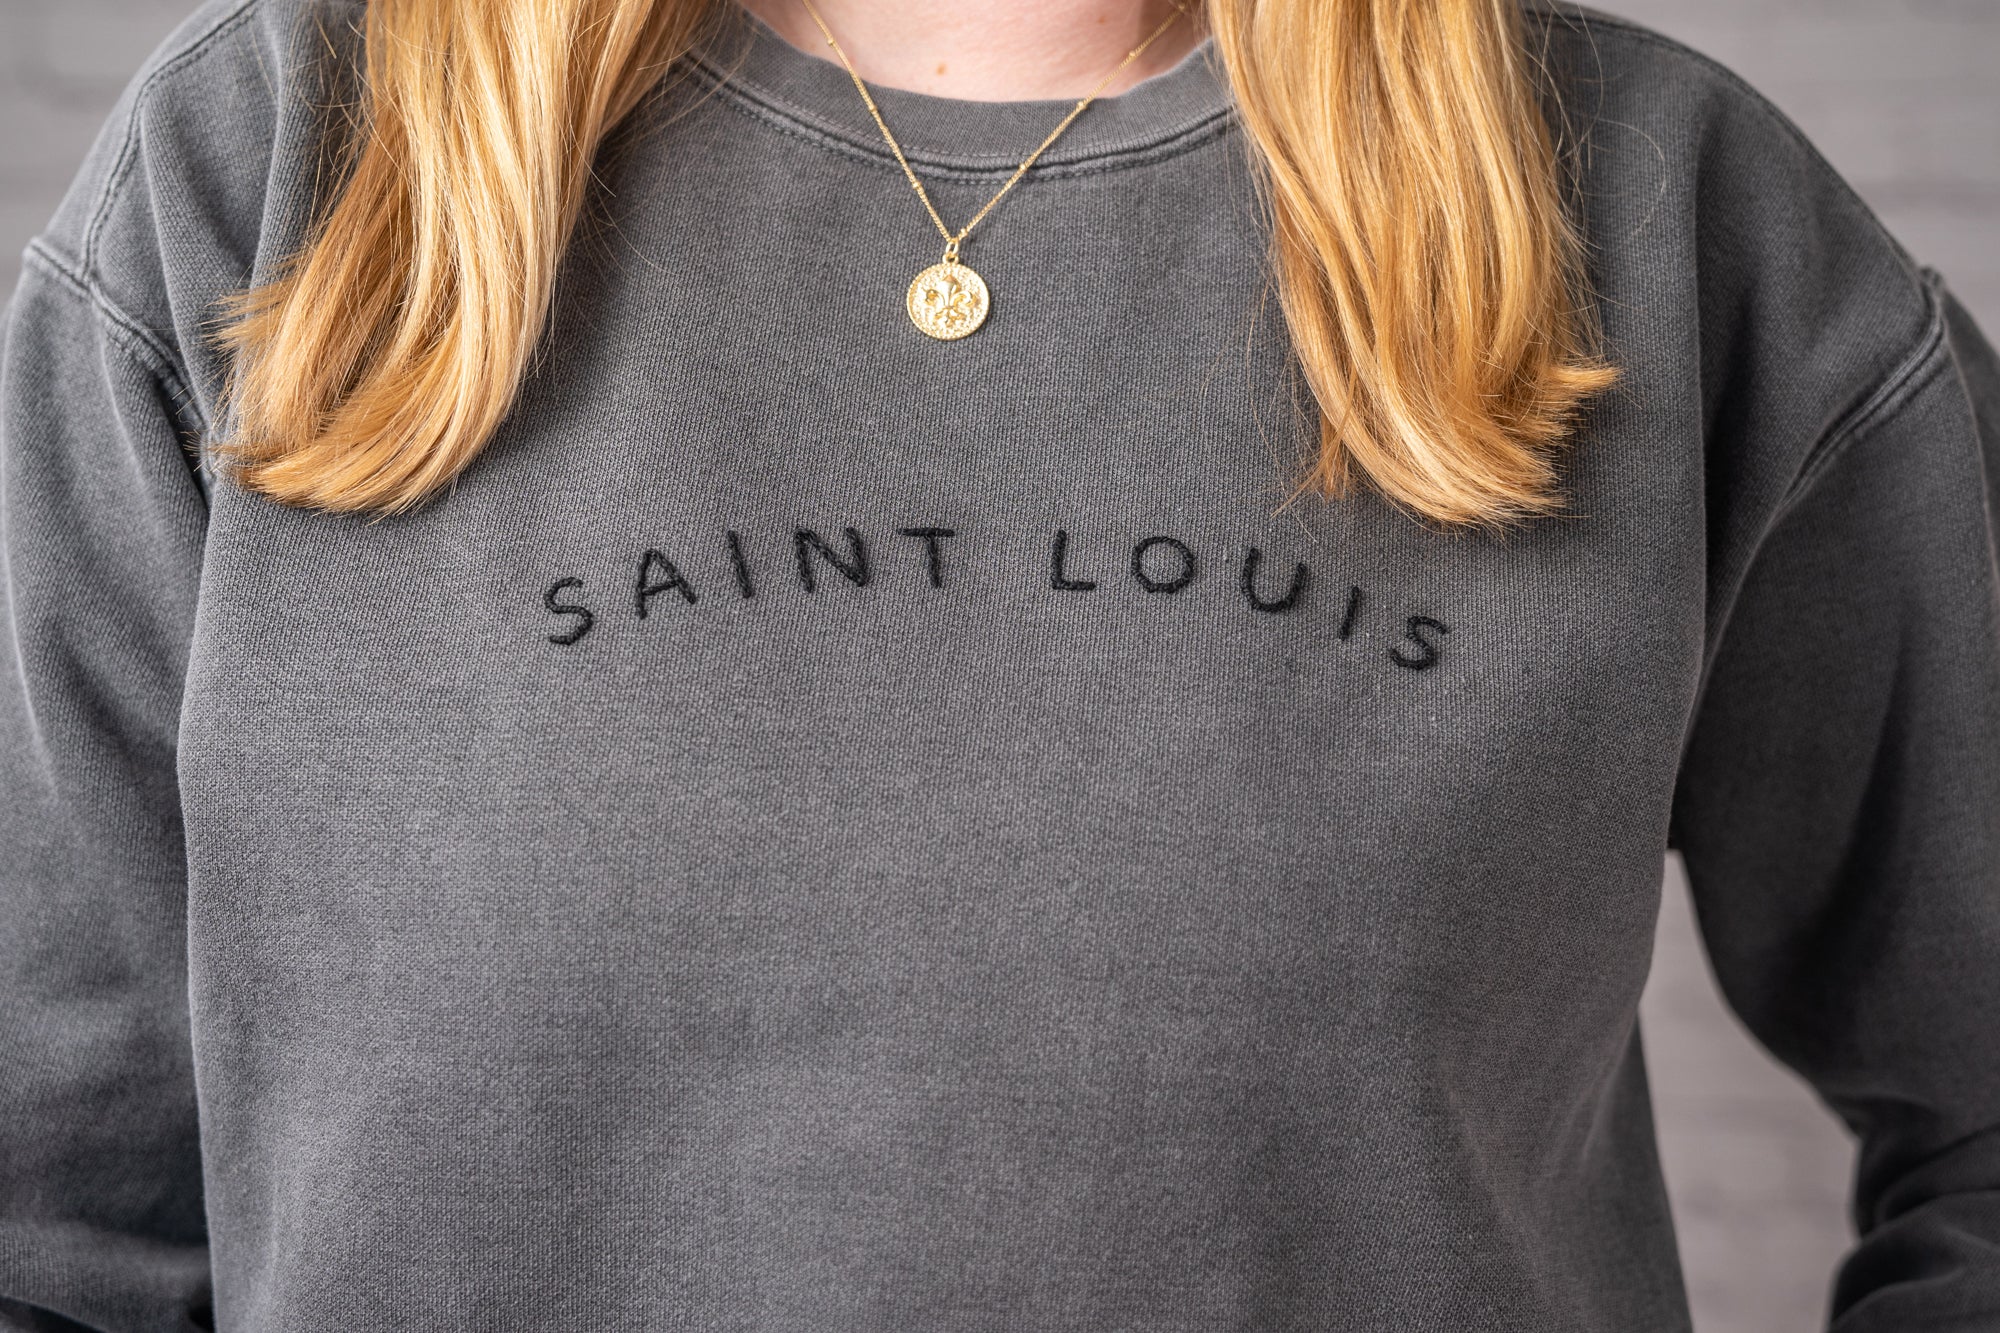 Saint Louis Preppy Cursive / Saint Louis Sweatshirt / St. Louis / Graphic  Sweatshirt